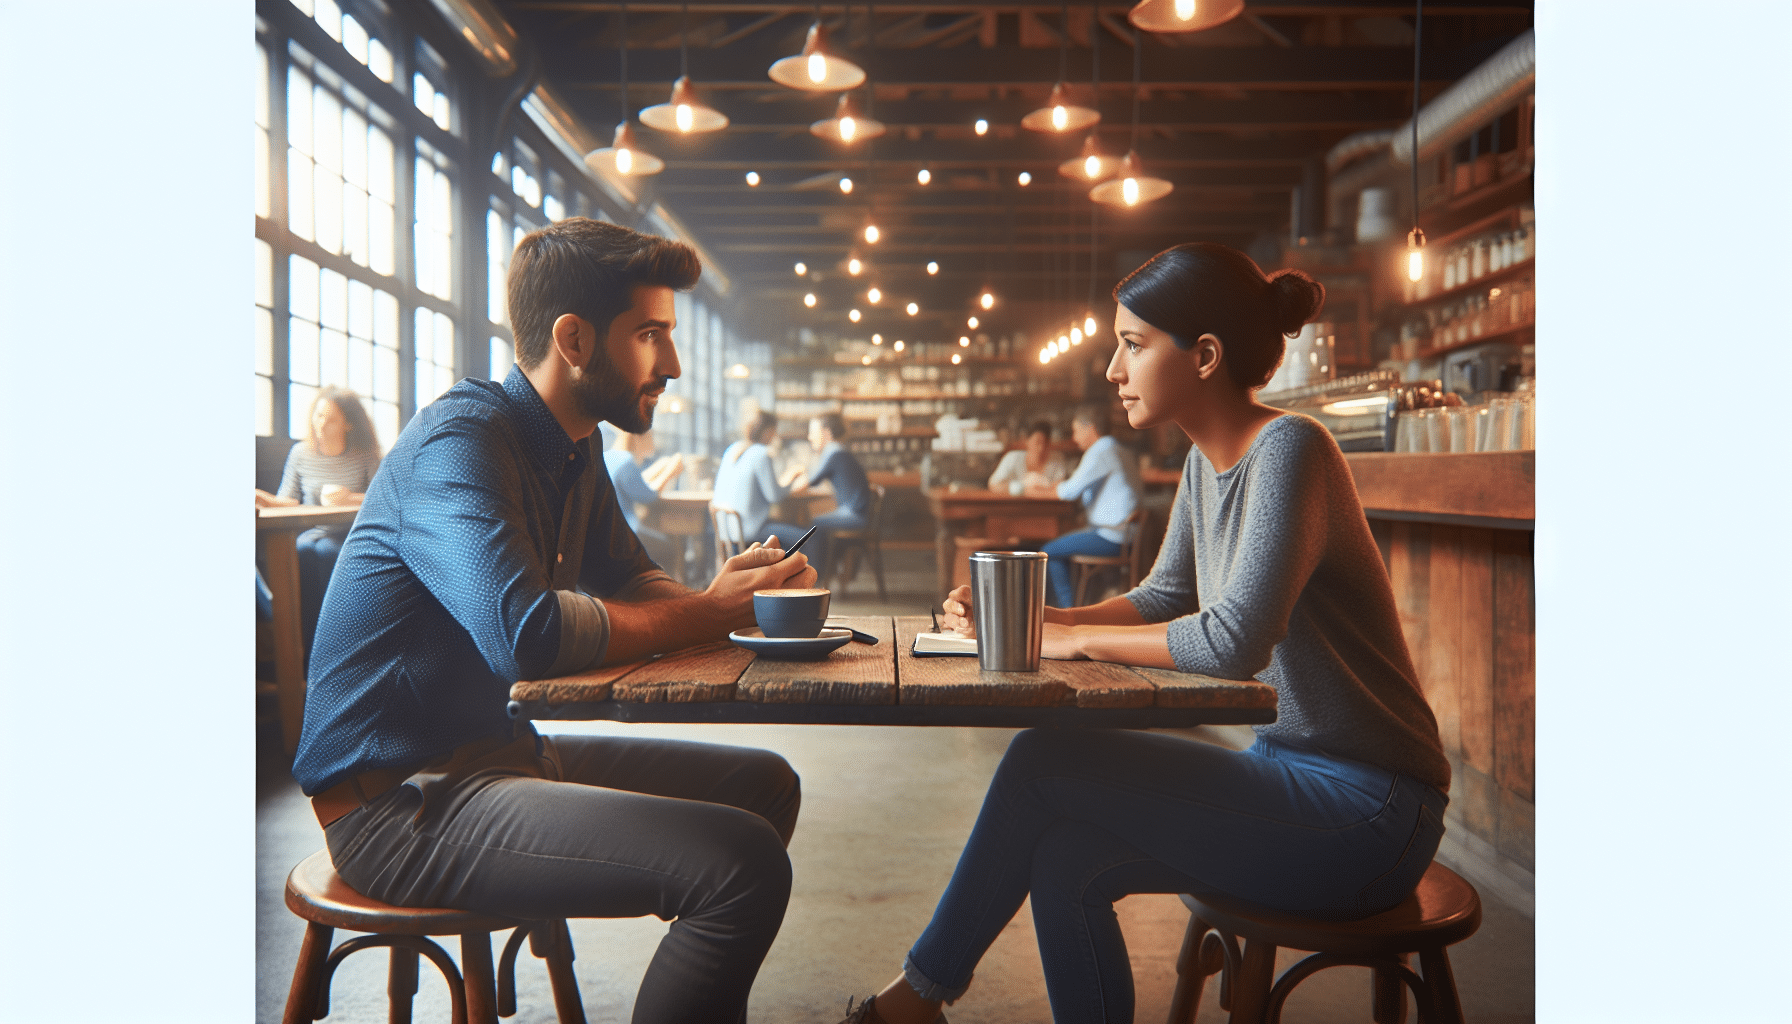 Deep conversation in a buzzing, rustic coffee shop.